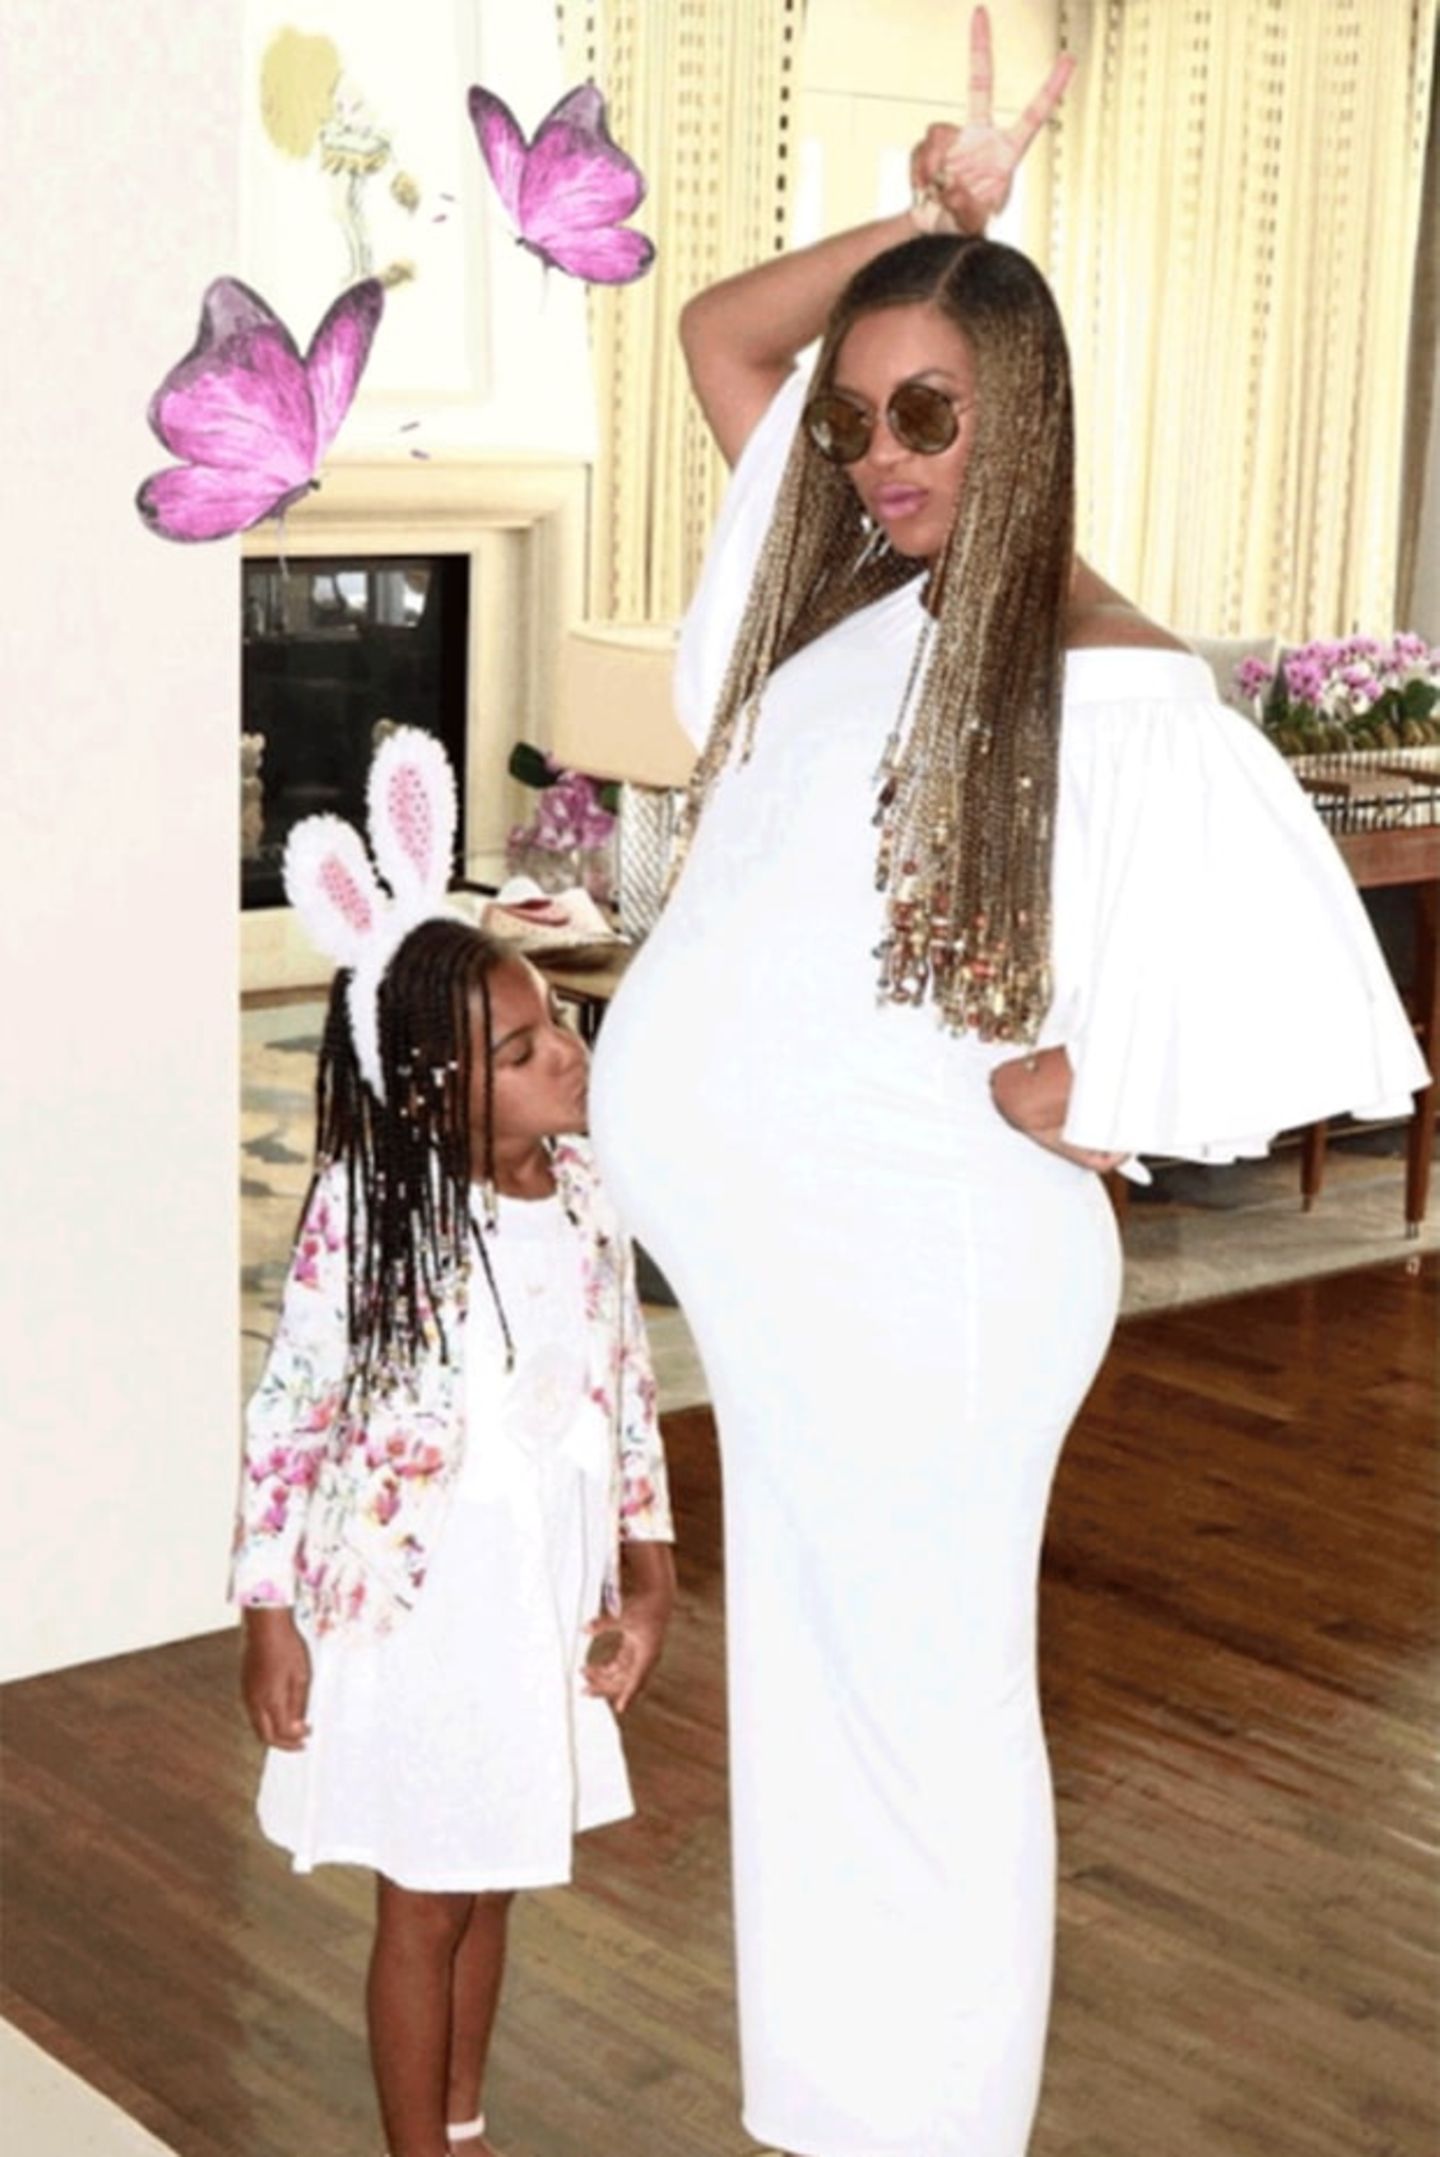 Dieses süße Foto von ihrem Oster-Wochenende postete Beyoncé am Sonntag (23. April) auf ihrer Webseite. Töchterchen Blue Ivy trägt einen Haarreif mit Hasenohren und küsst Beyoncé beachtlichen Babybauch. Die Kleine freut sich auf ihre Geschwister.